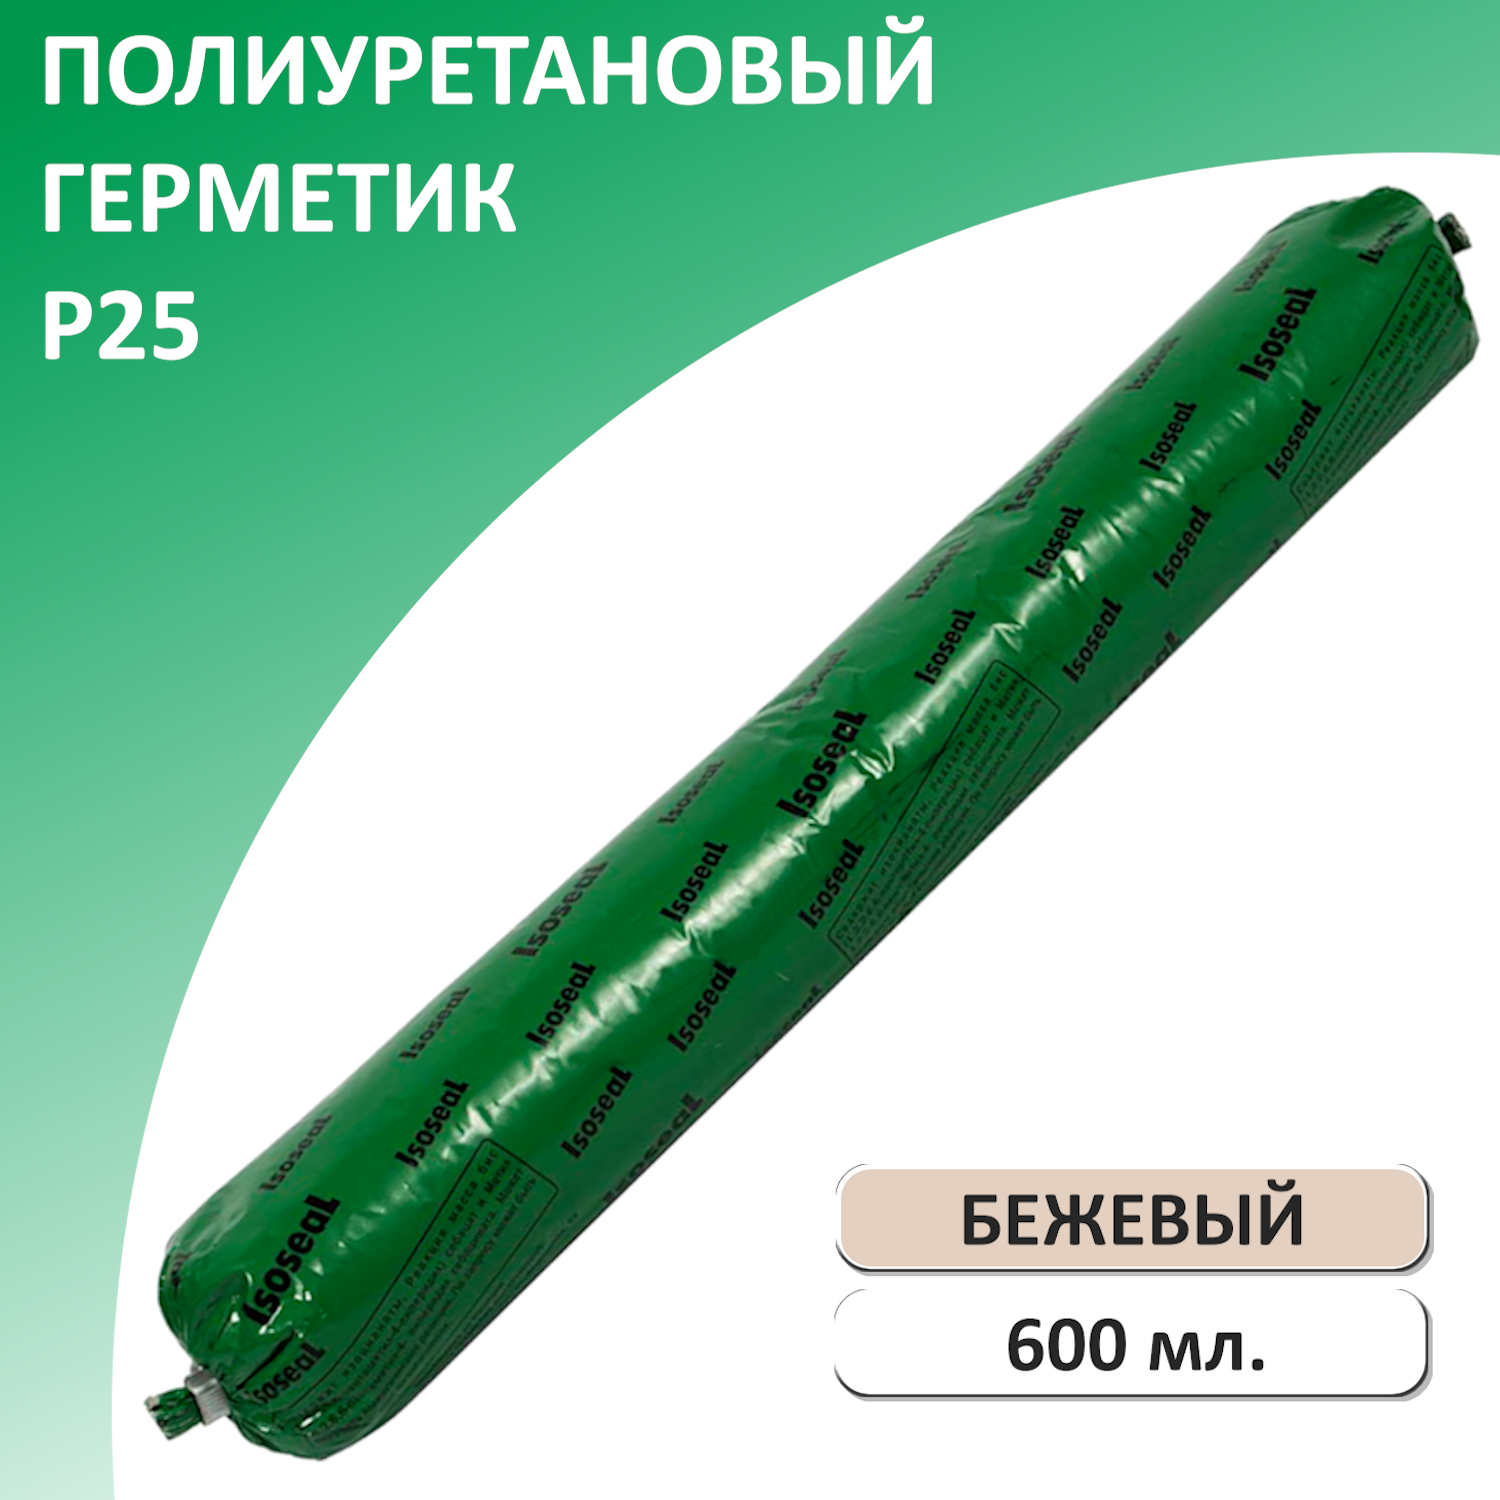 Герметик полиуретановый ISOSEAL P25, бежевый, 600 мл высокомодульный полиуретановый герметик window system